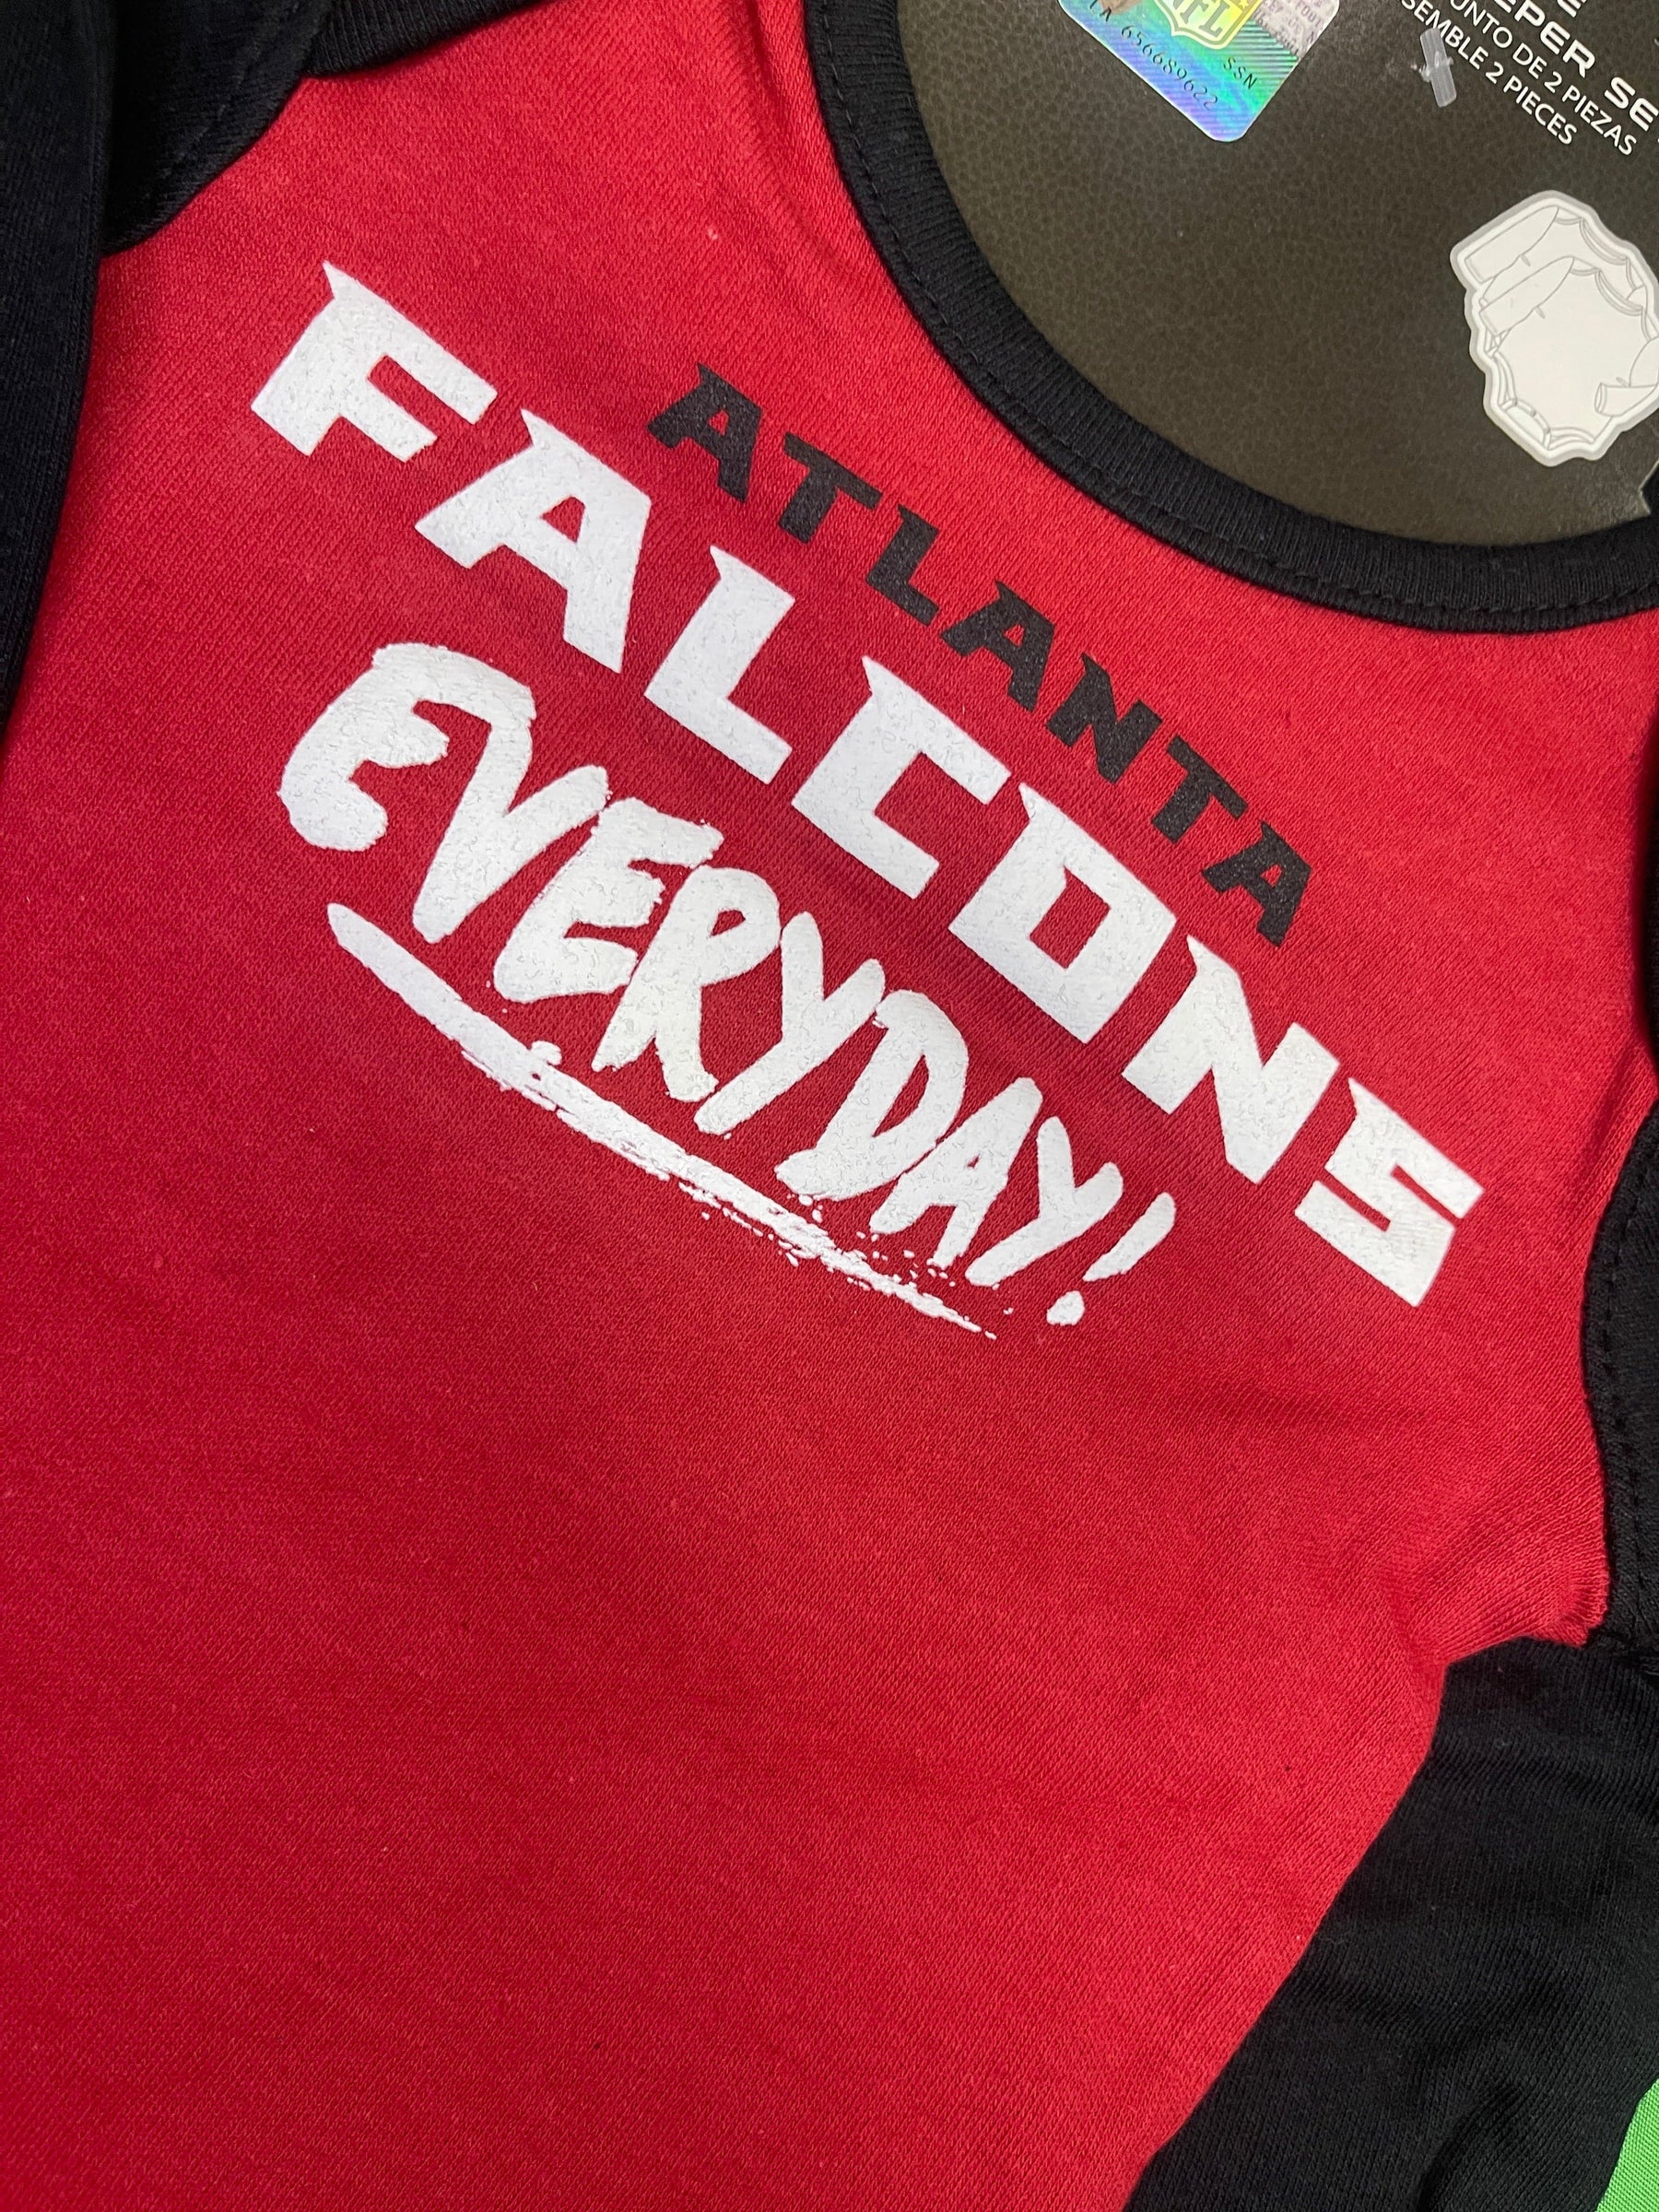 NFL Atlanta Falcons 2-Pc L/S Bodysuits/Vests Infant Baby 0-3 Months NWT